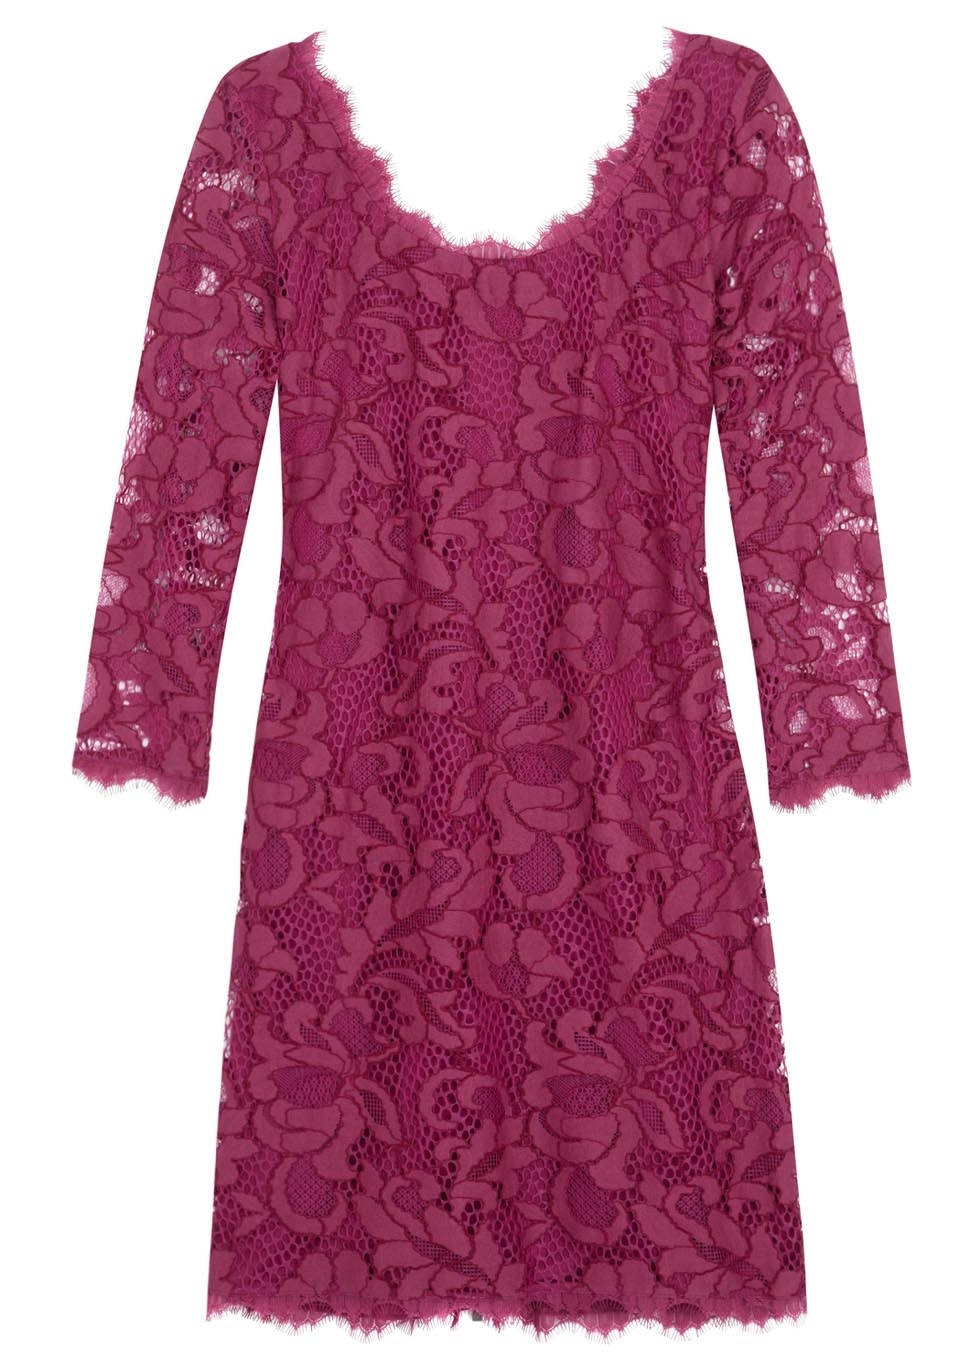 Zarita berry lace overlay cotton blend dress